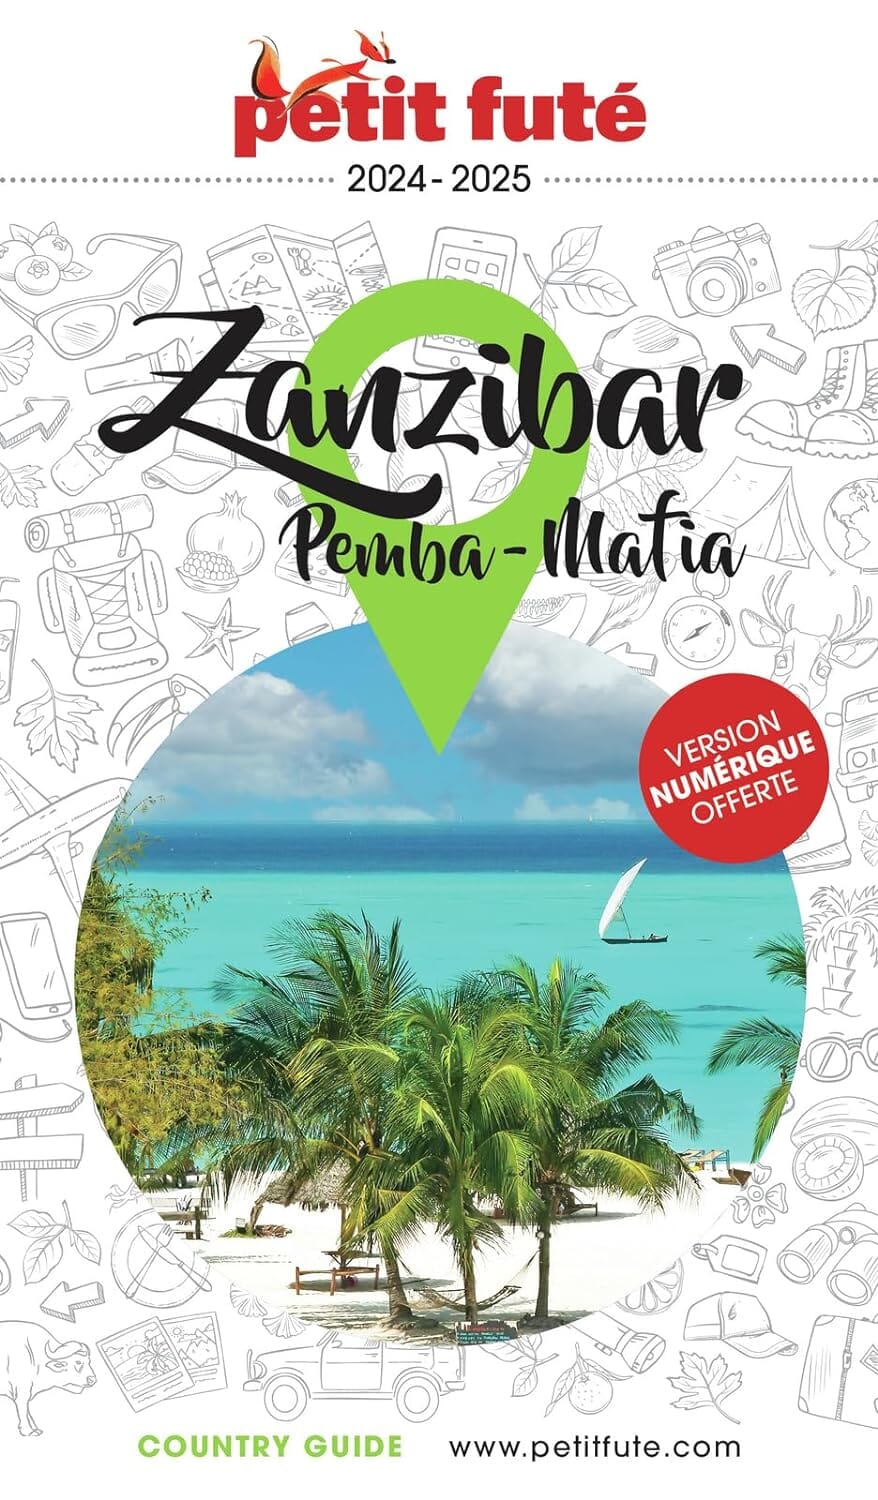 Guide de voyage - Zanzibar, Pemba, Mafia 2024/25 | Petit Futé guide de voyage Petit Futé 